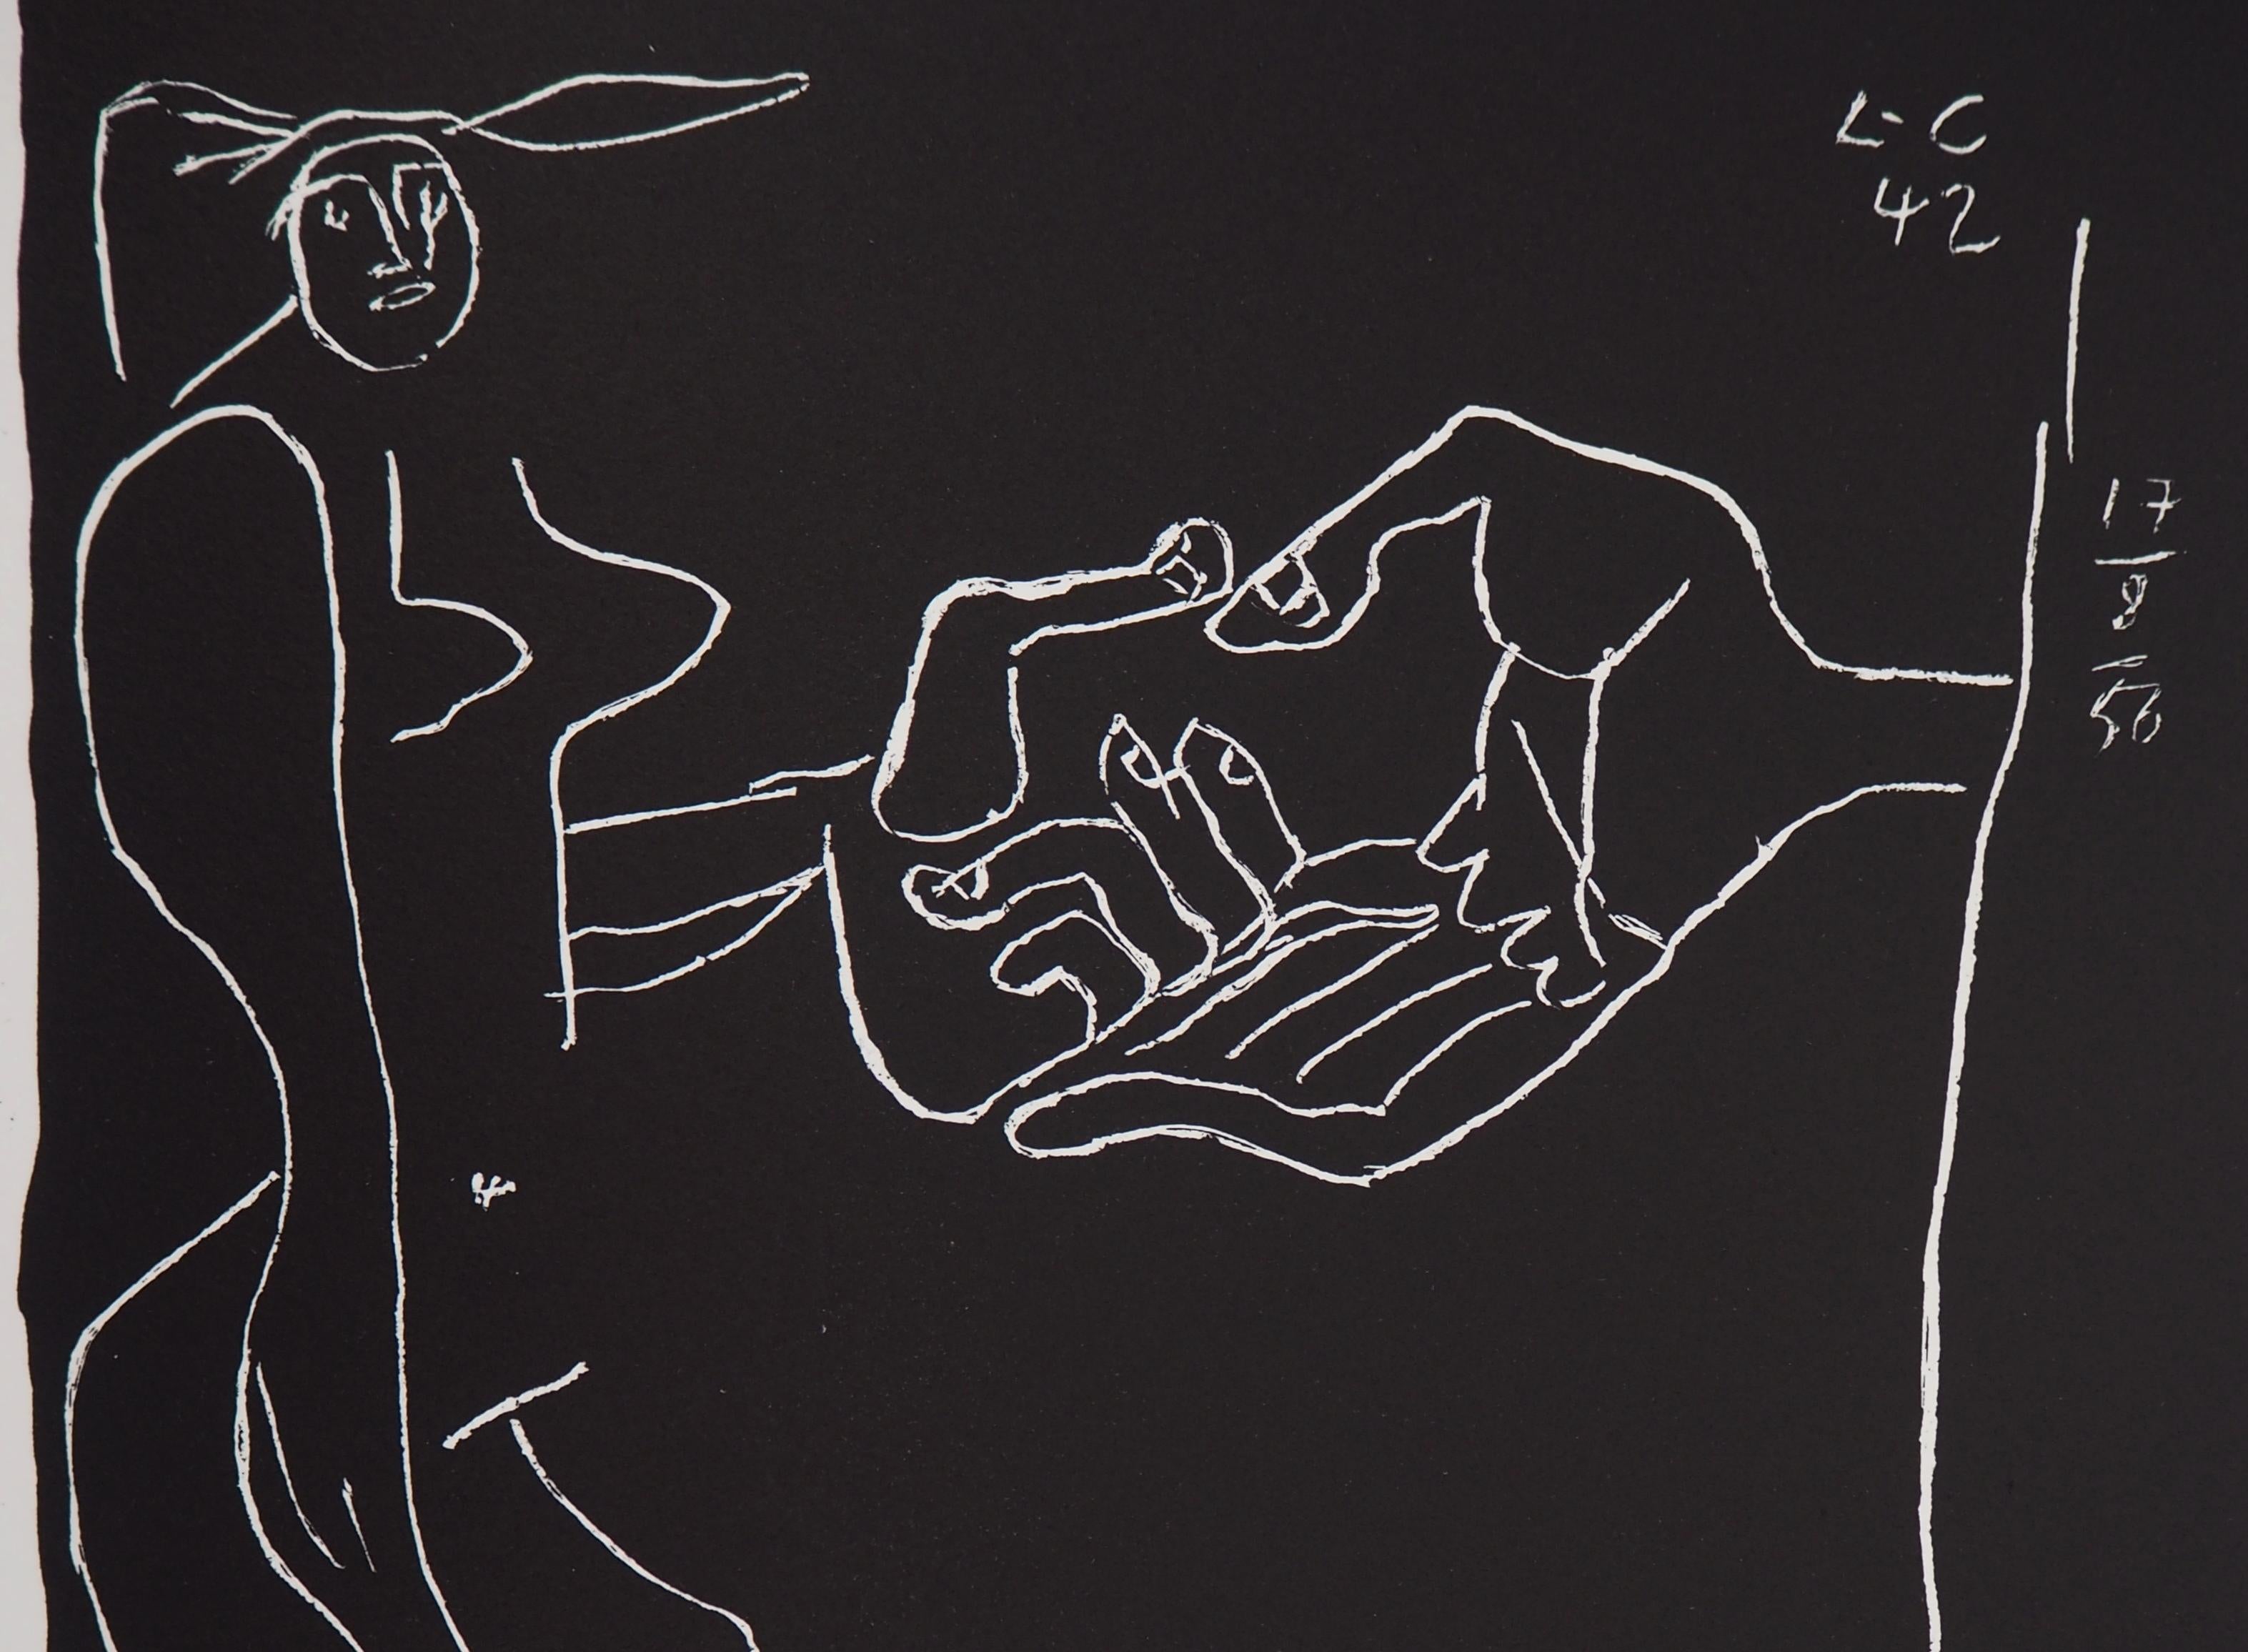 Friendship - Original lithograph (Atelier Michel Cassé), 1964 - Black Figurative Print by Le Corbusier